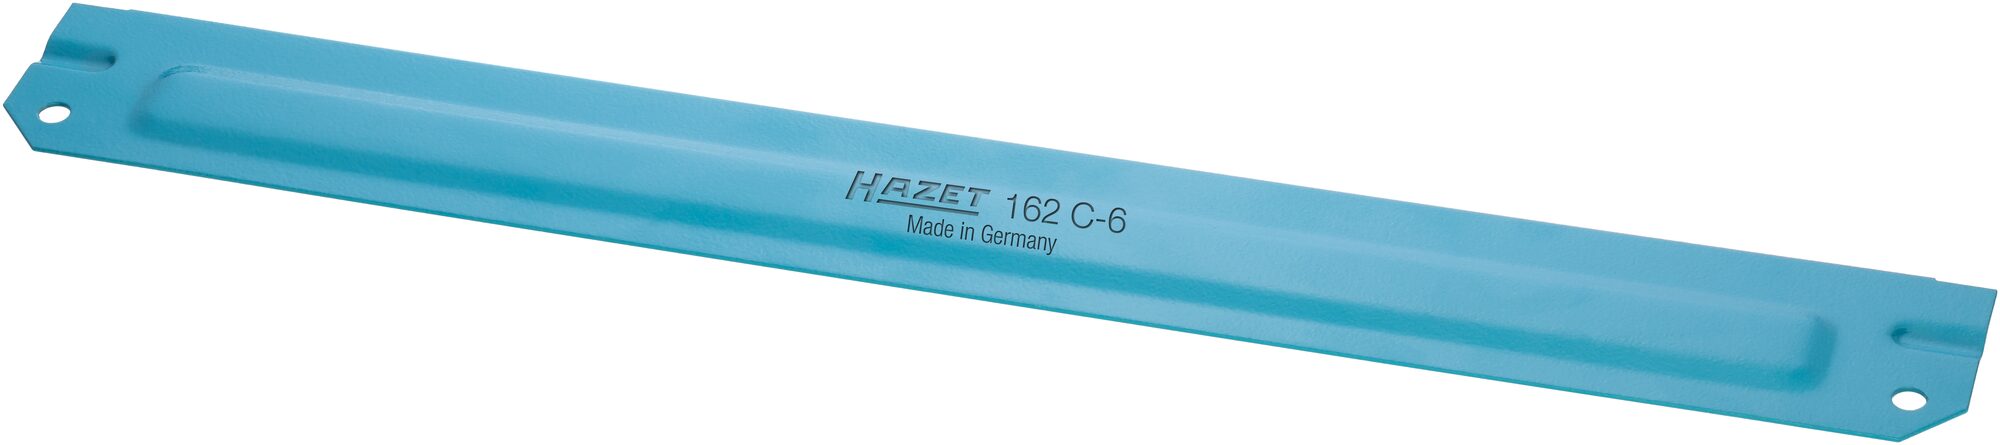 HAZET Trennblech 162C-6